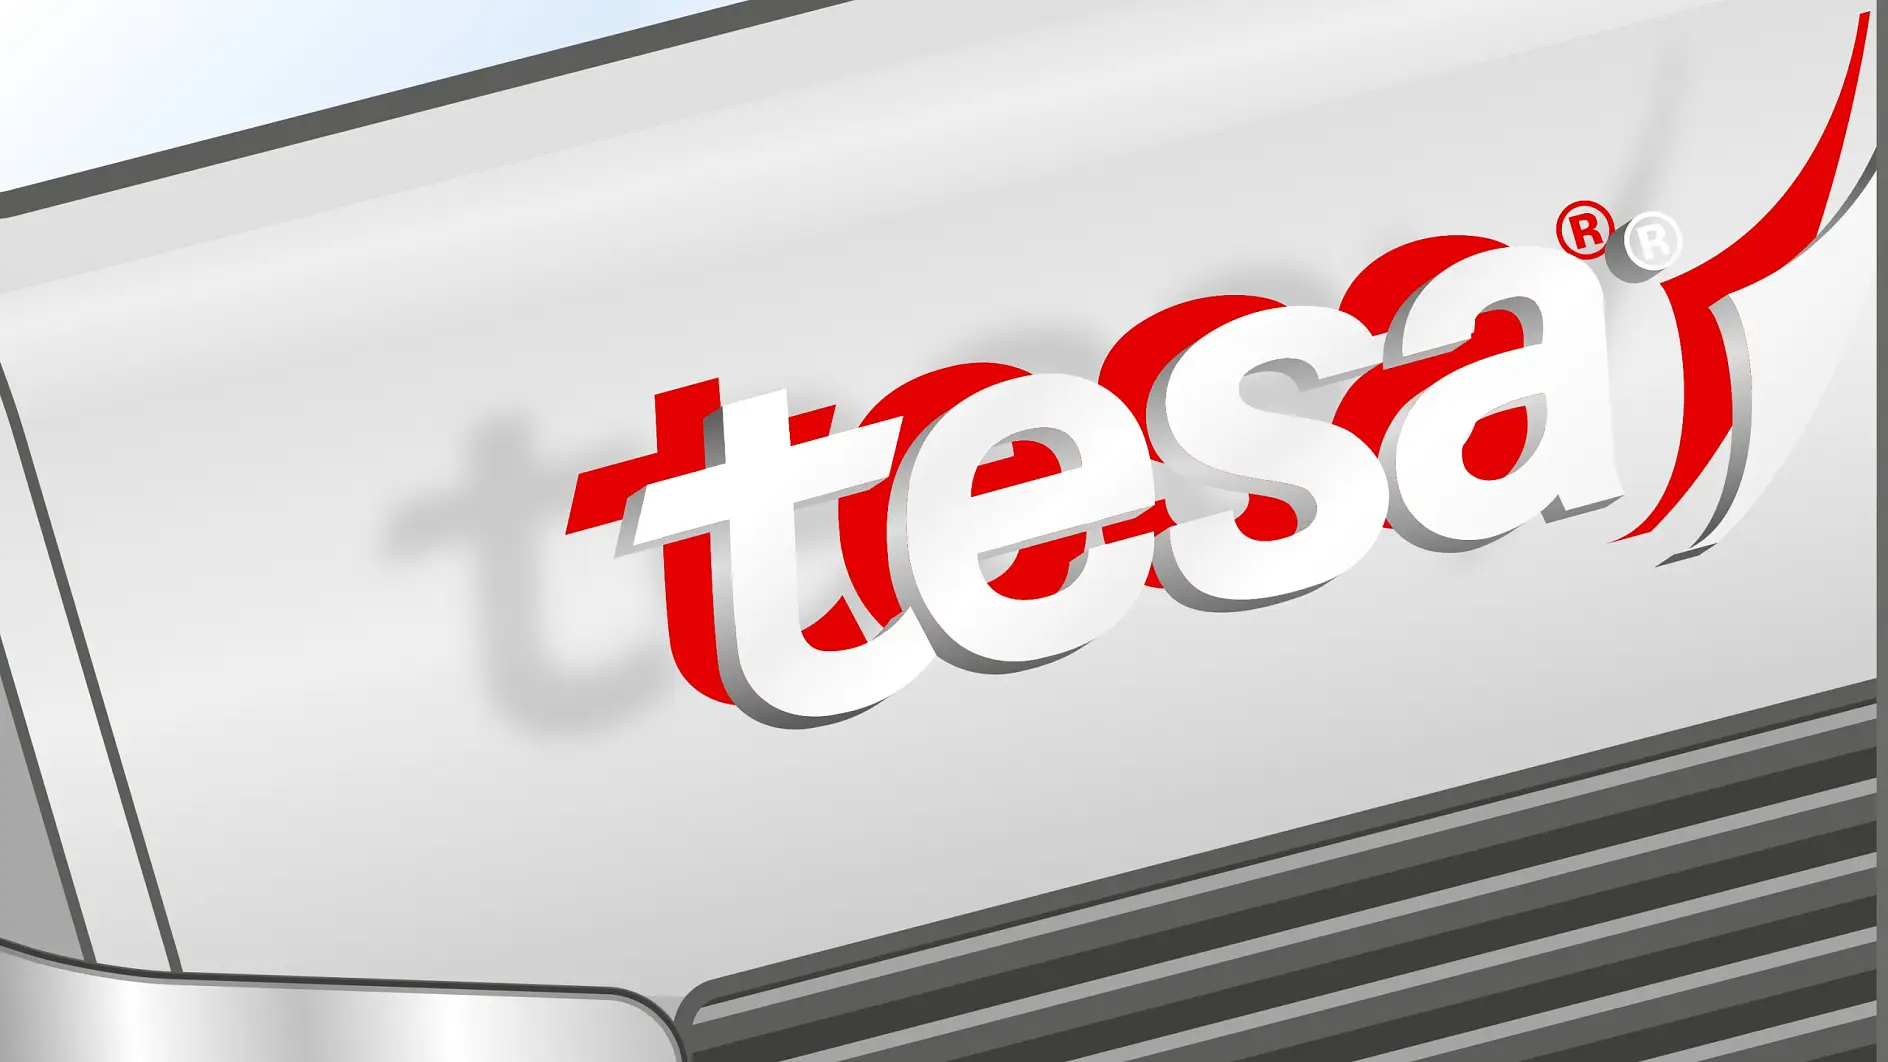 Băng keo chuyên dụng của Tesa dùng để gắn logo, bảng số xe